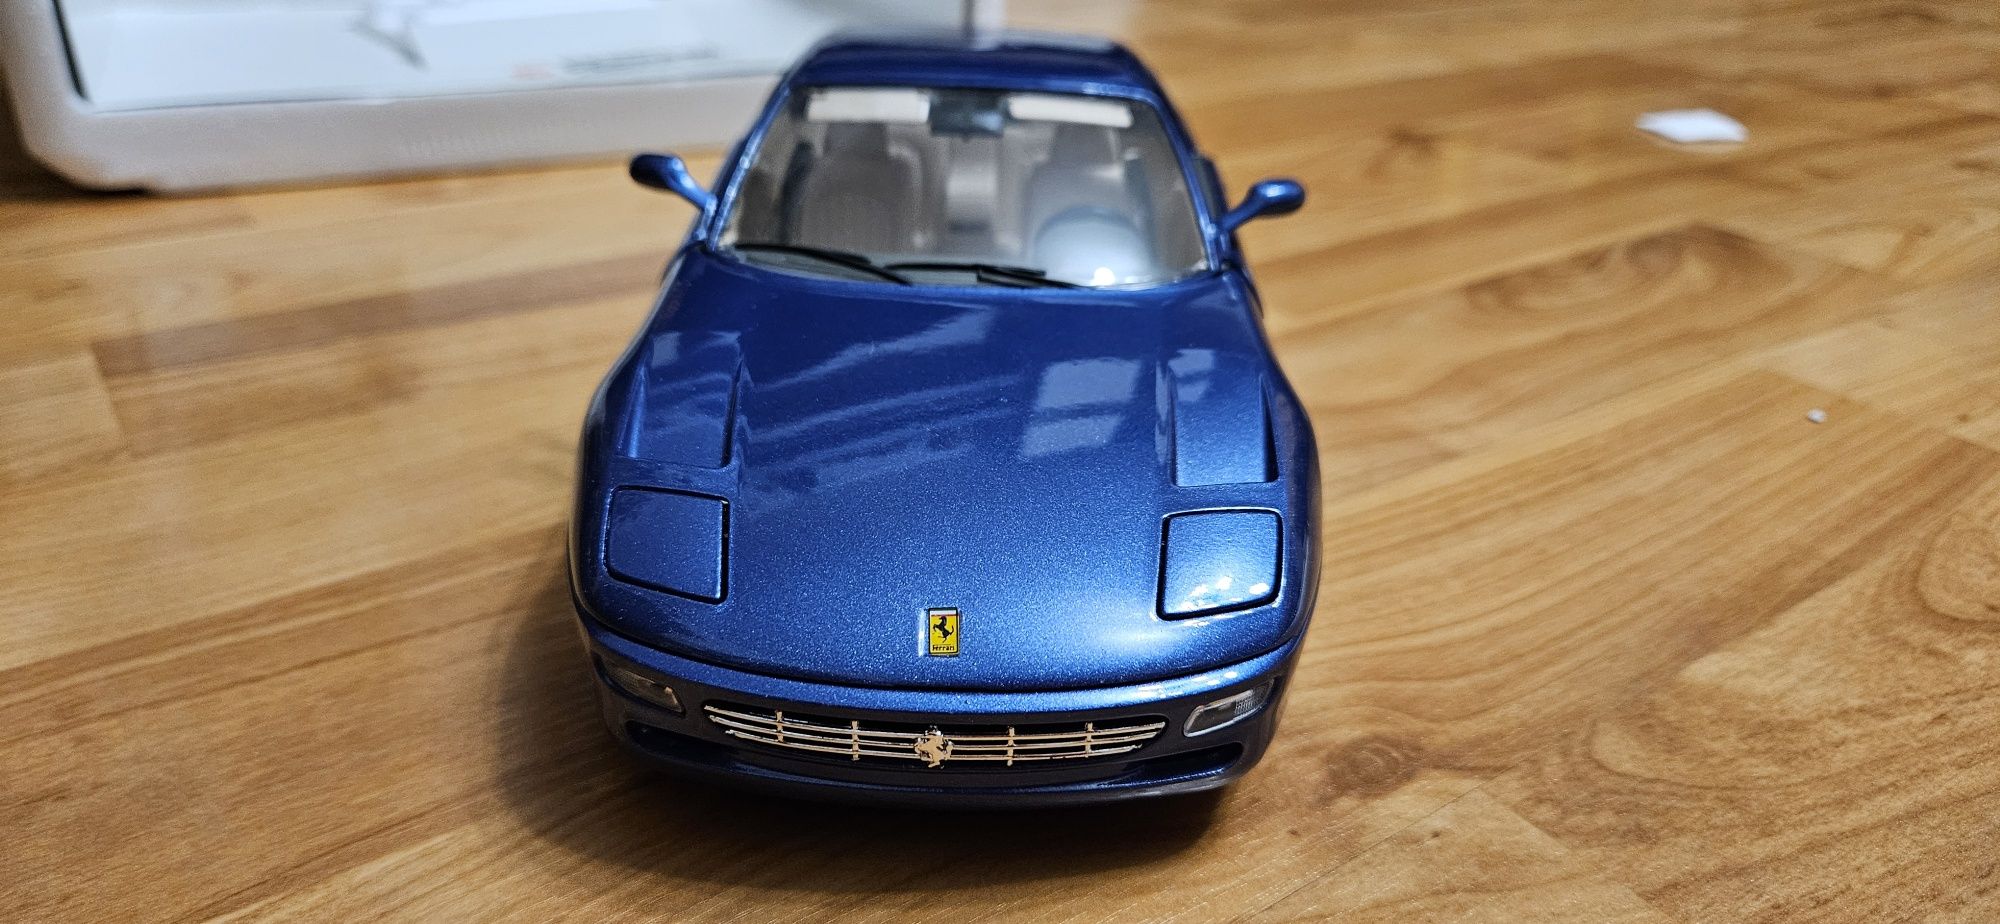 1:18 Burago Ferrari 456 GT